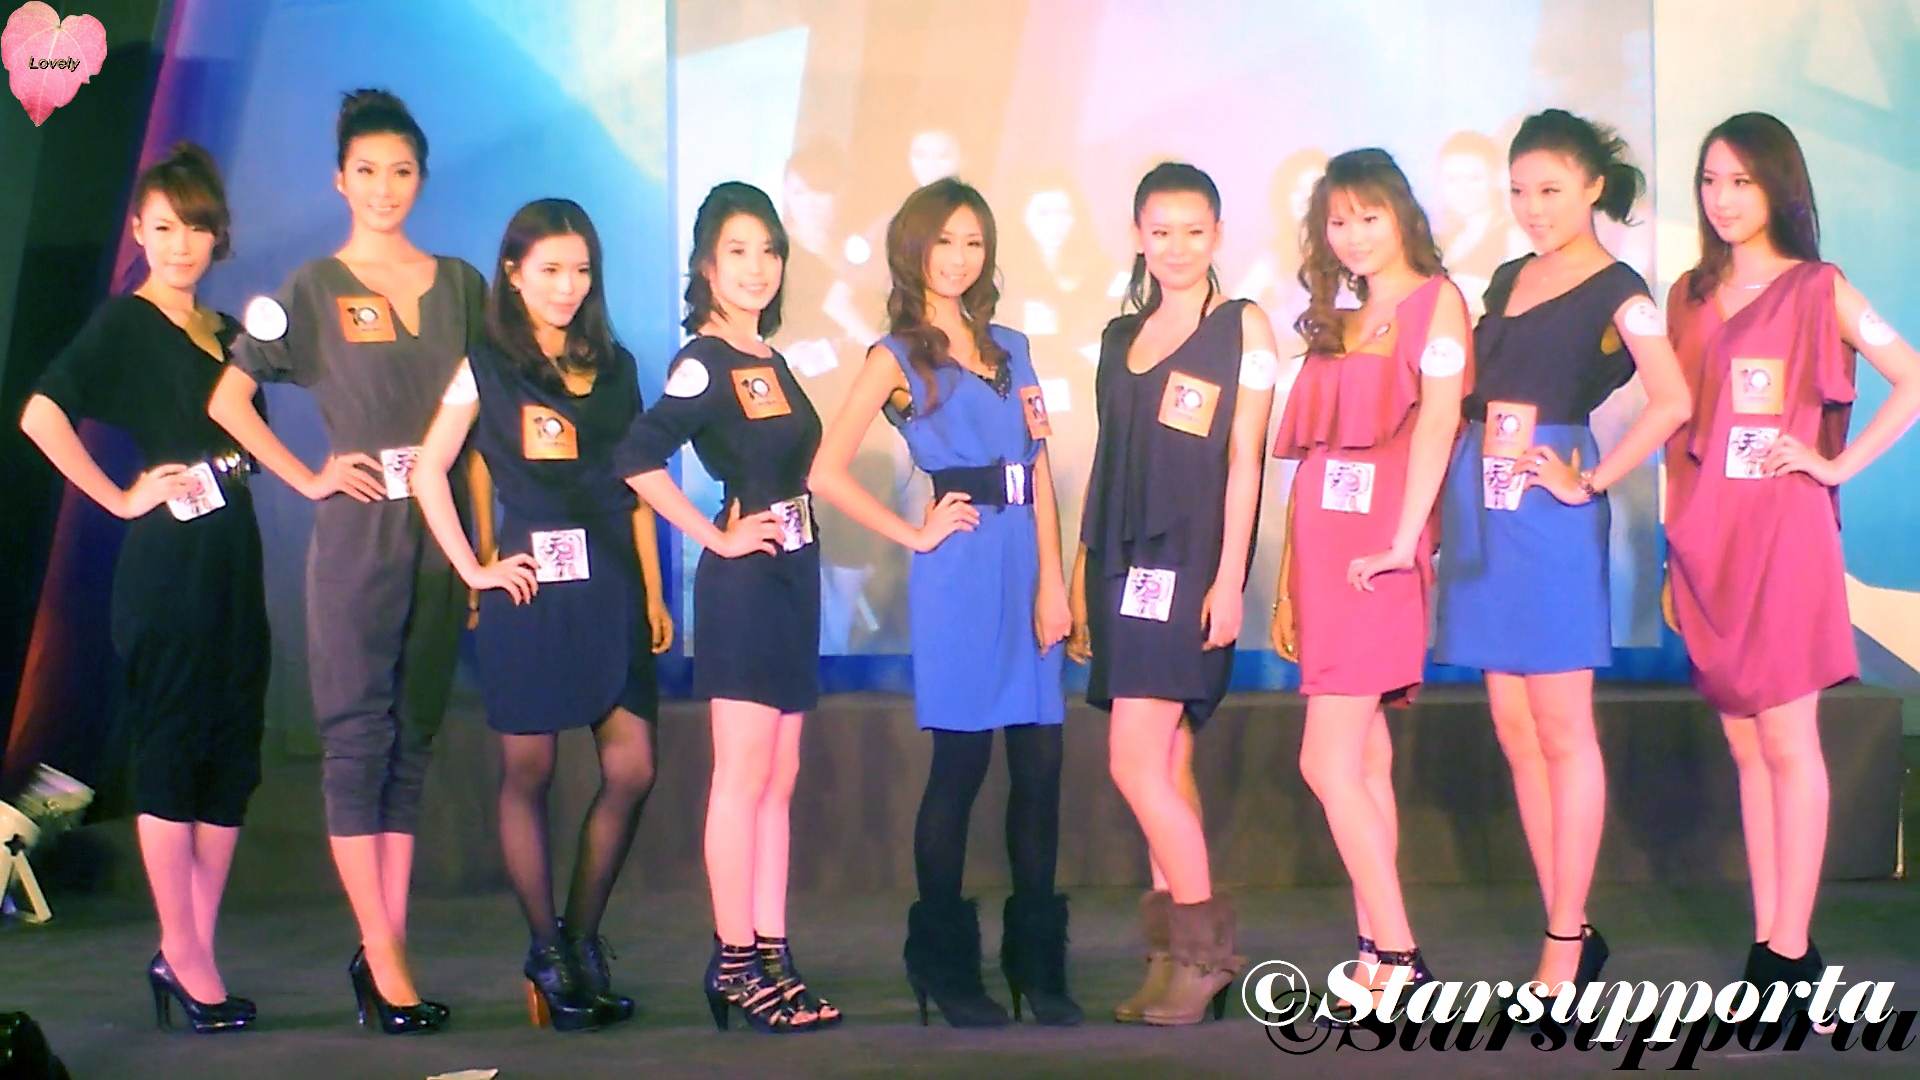 20111226 亞洲遊戲展 Asia Game Show - Miss AGS 選舉總決賽: 選手出場 @ 香港會議展覽中心 HKCEC